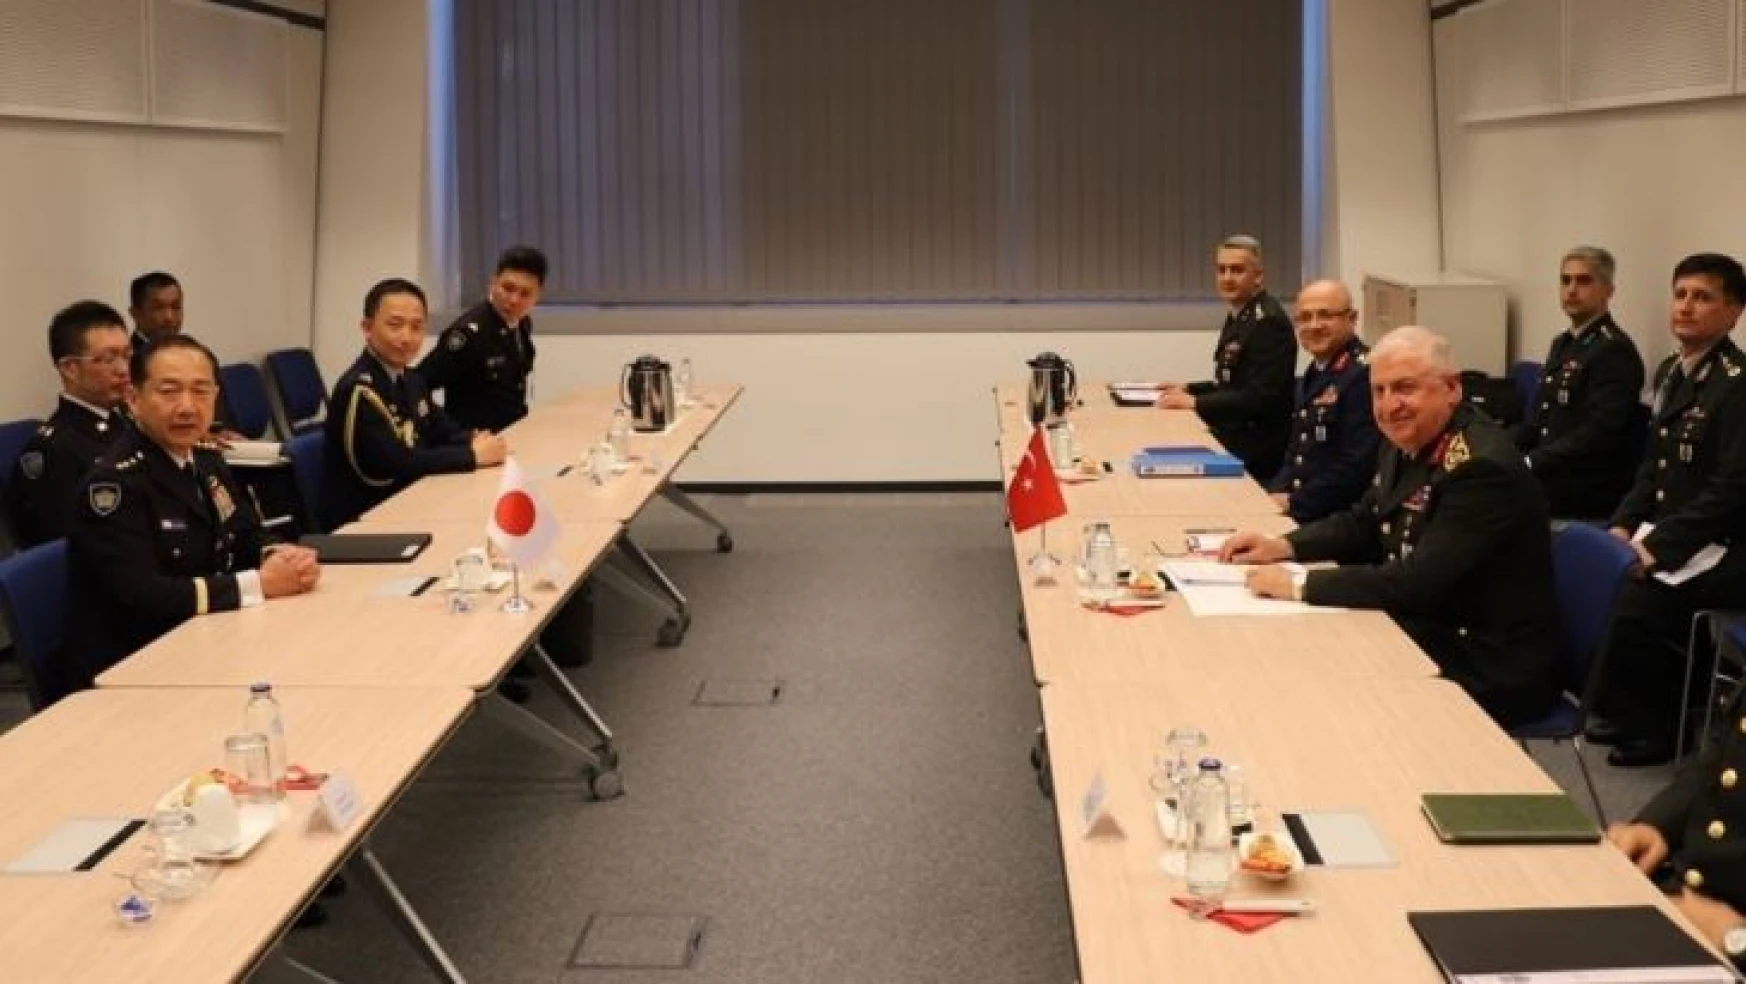 Genelkurmay Başkanı Güler, İtalyan ve Japon mevkidaşlarıyla görüştü